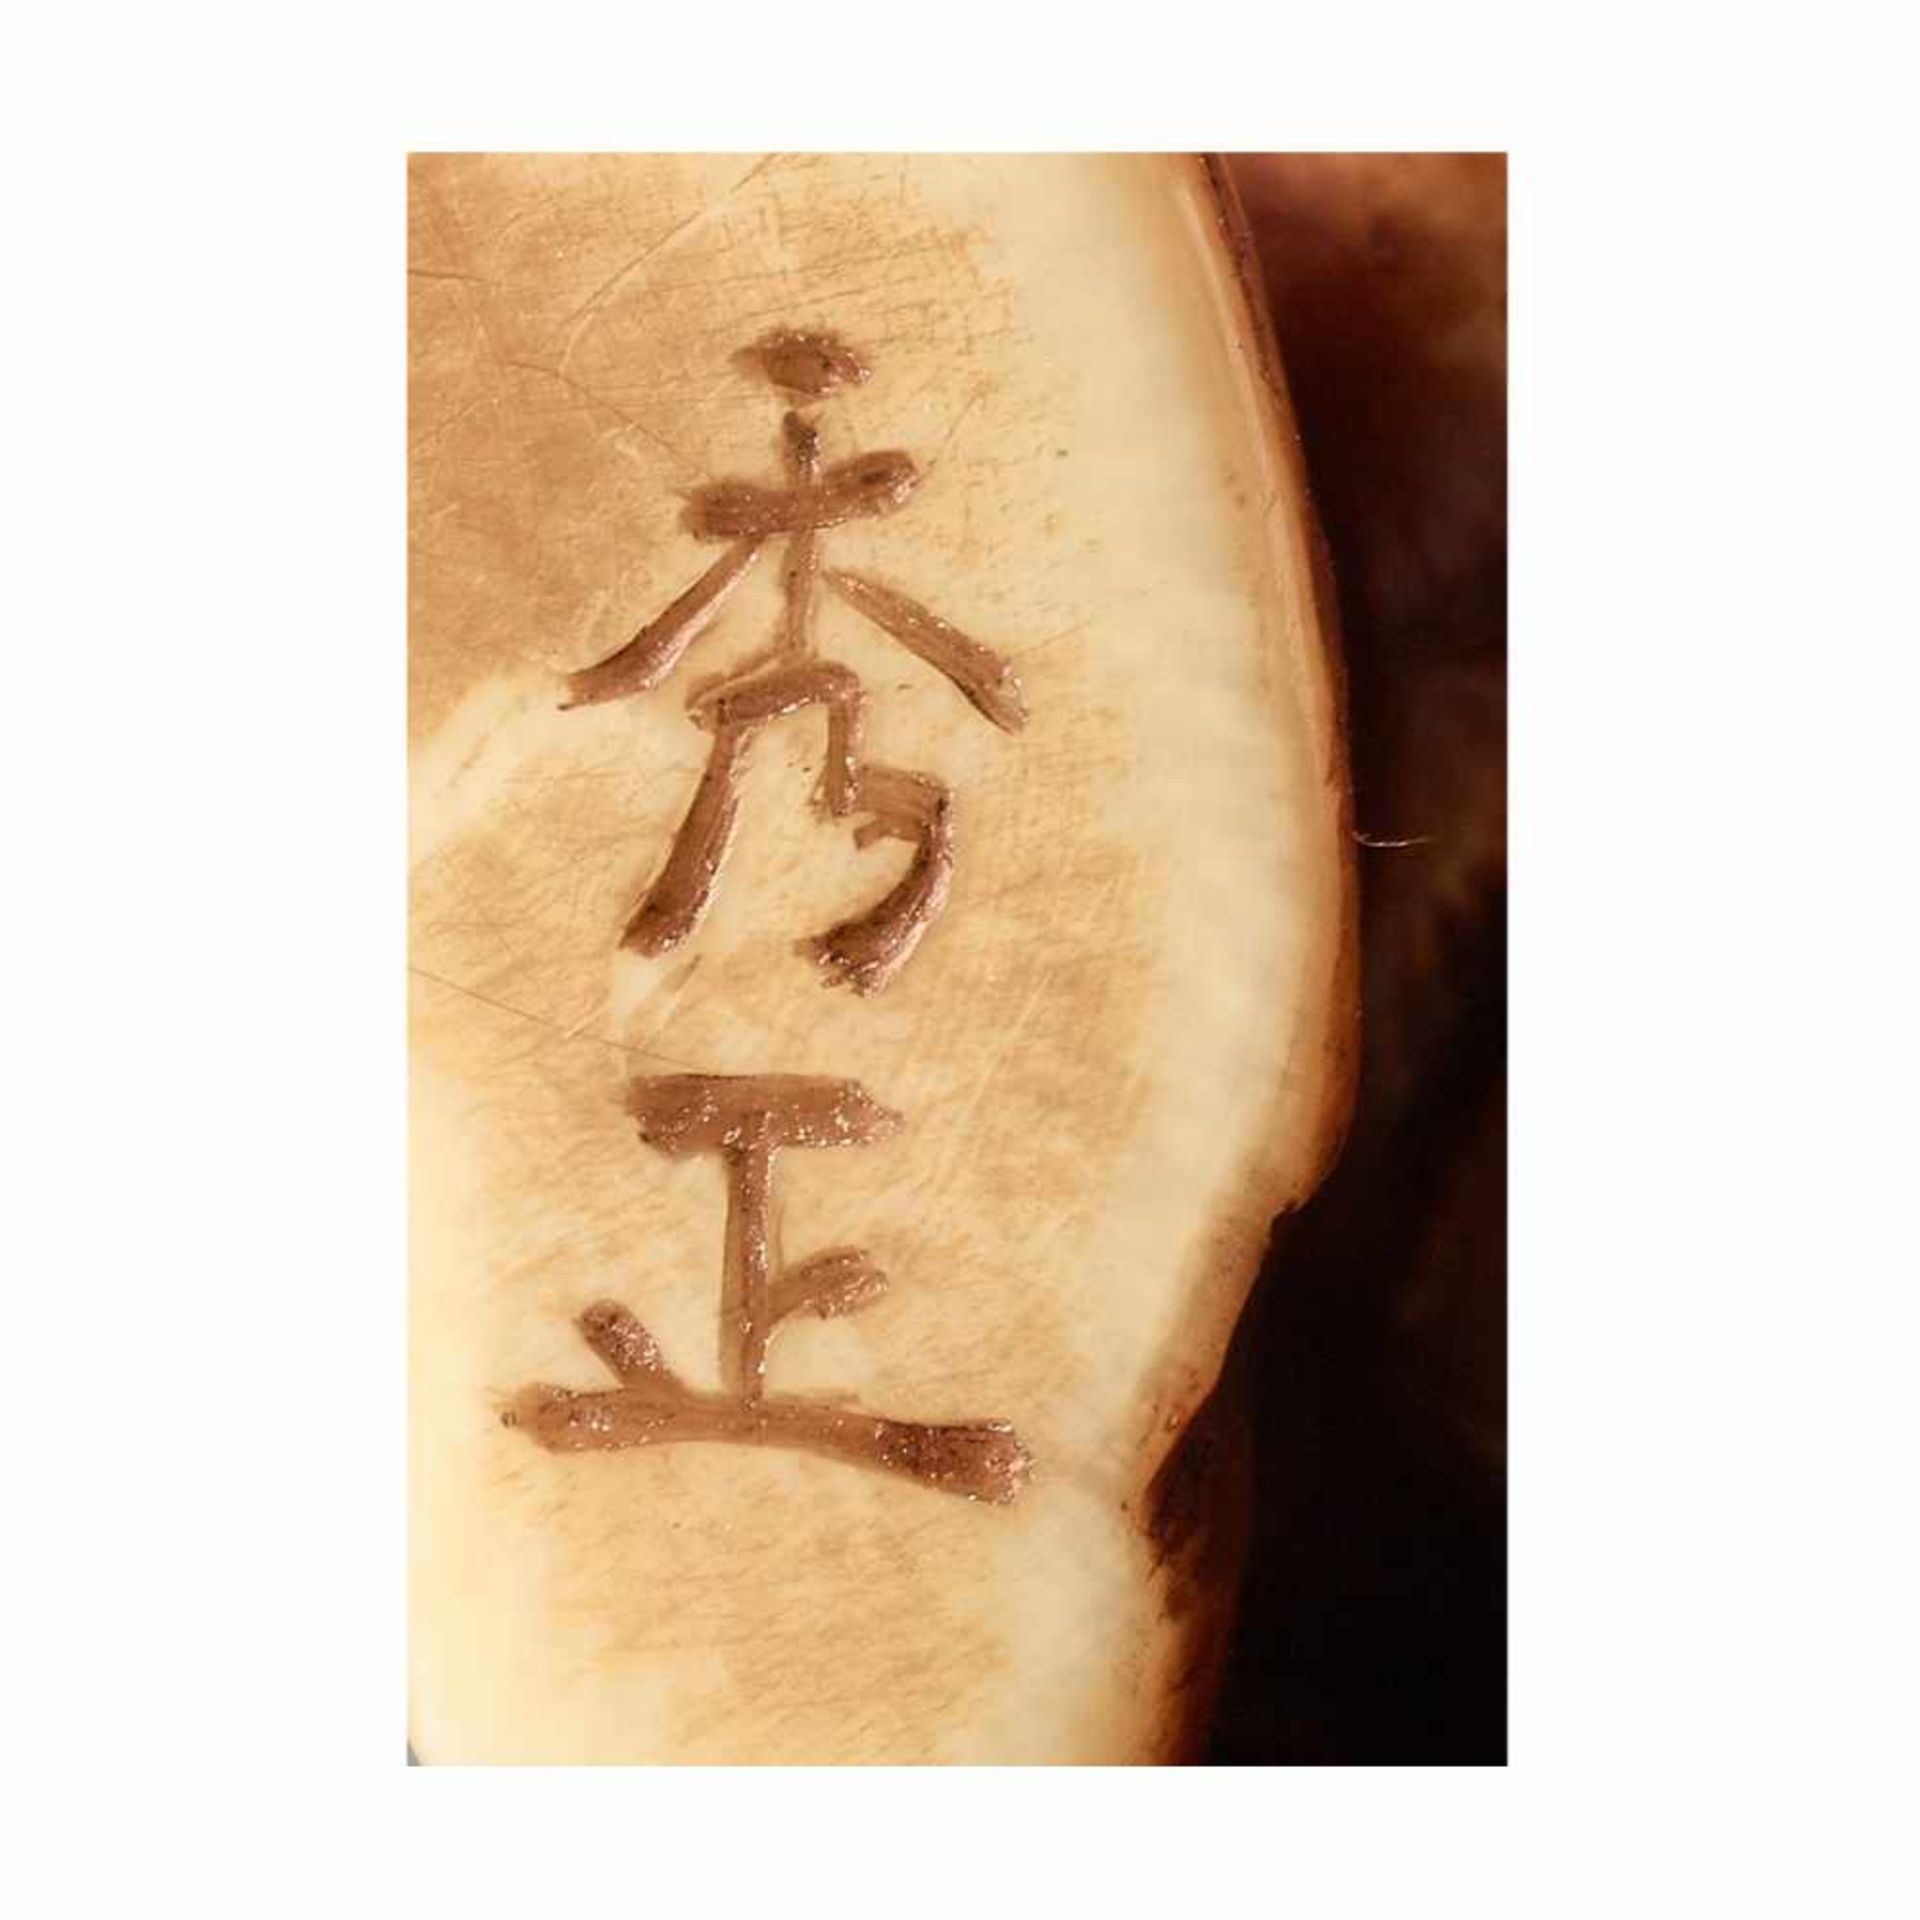 A VERY RARE IVORY NETSUKE DEPICTING KANI YAMABUSHI BY HIDEMASABy Hidemasa, ivory netsukeJapan, - Image 7 of 7